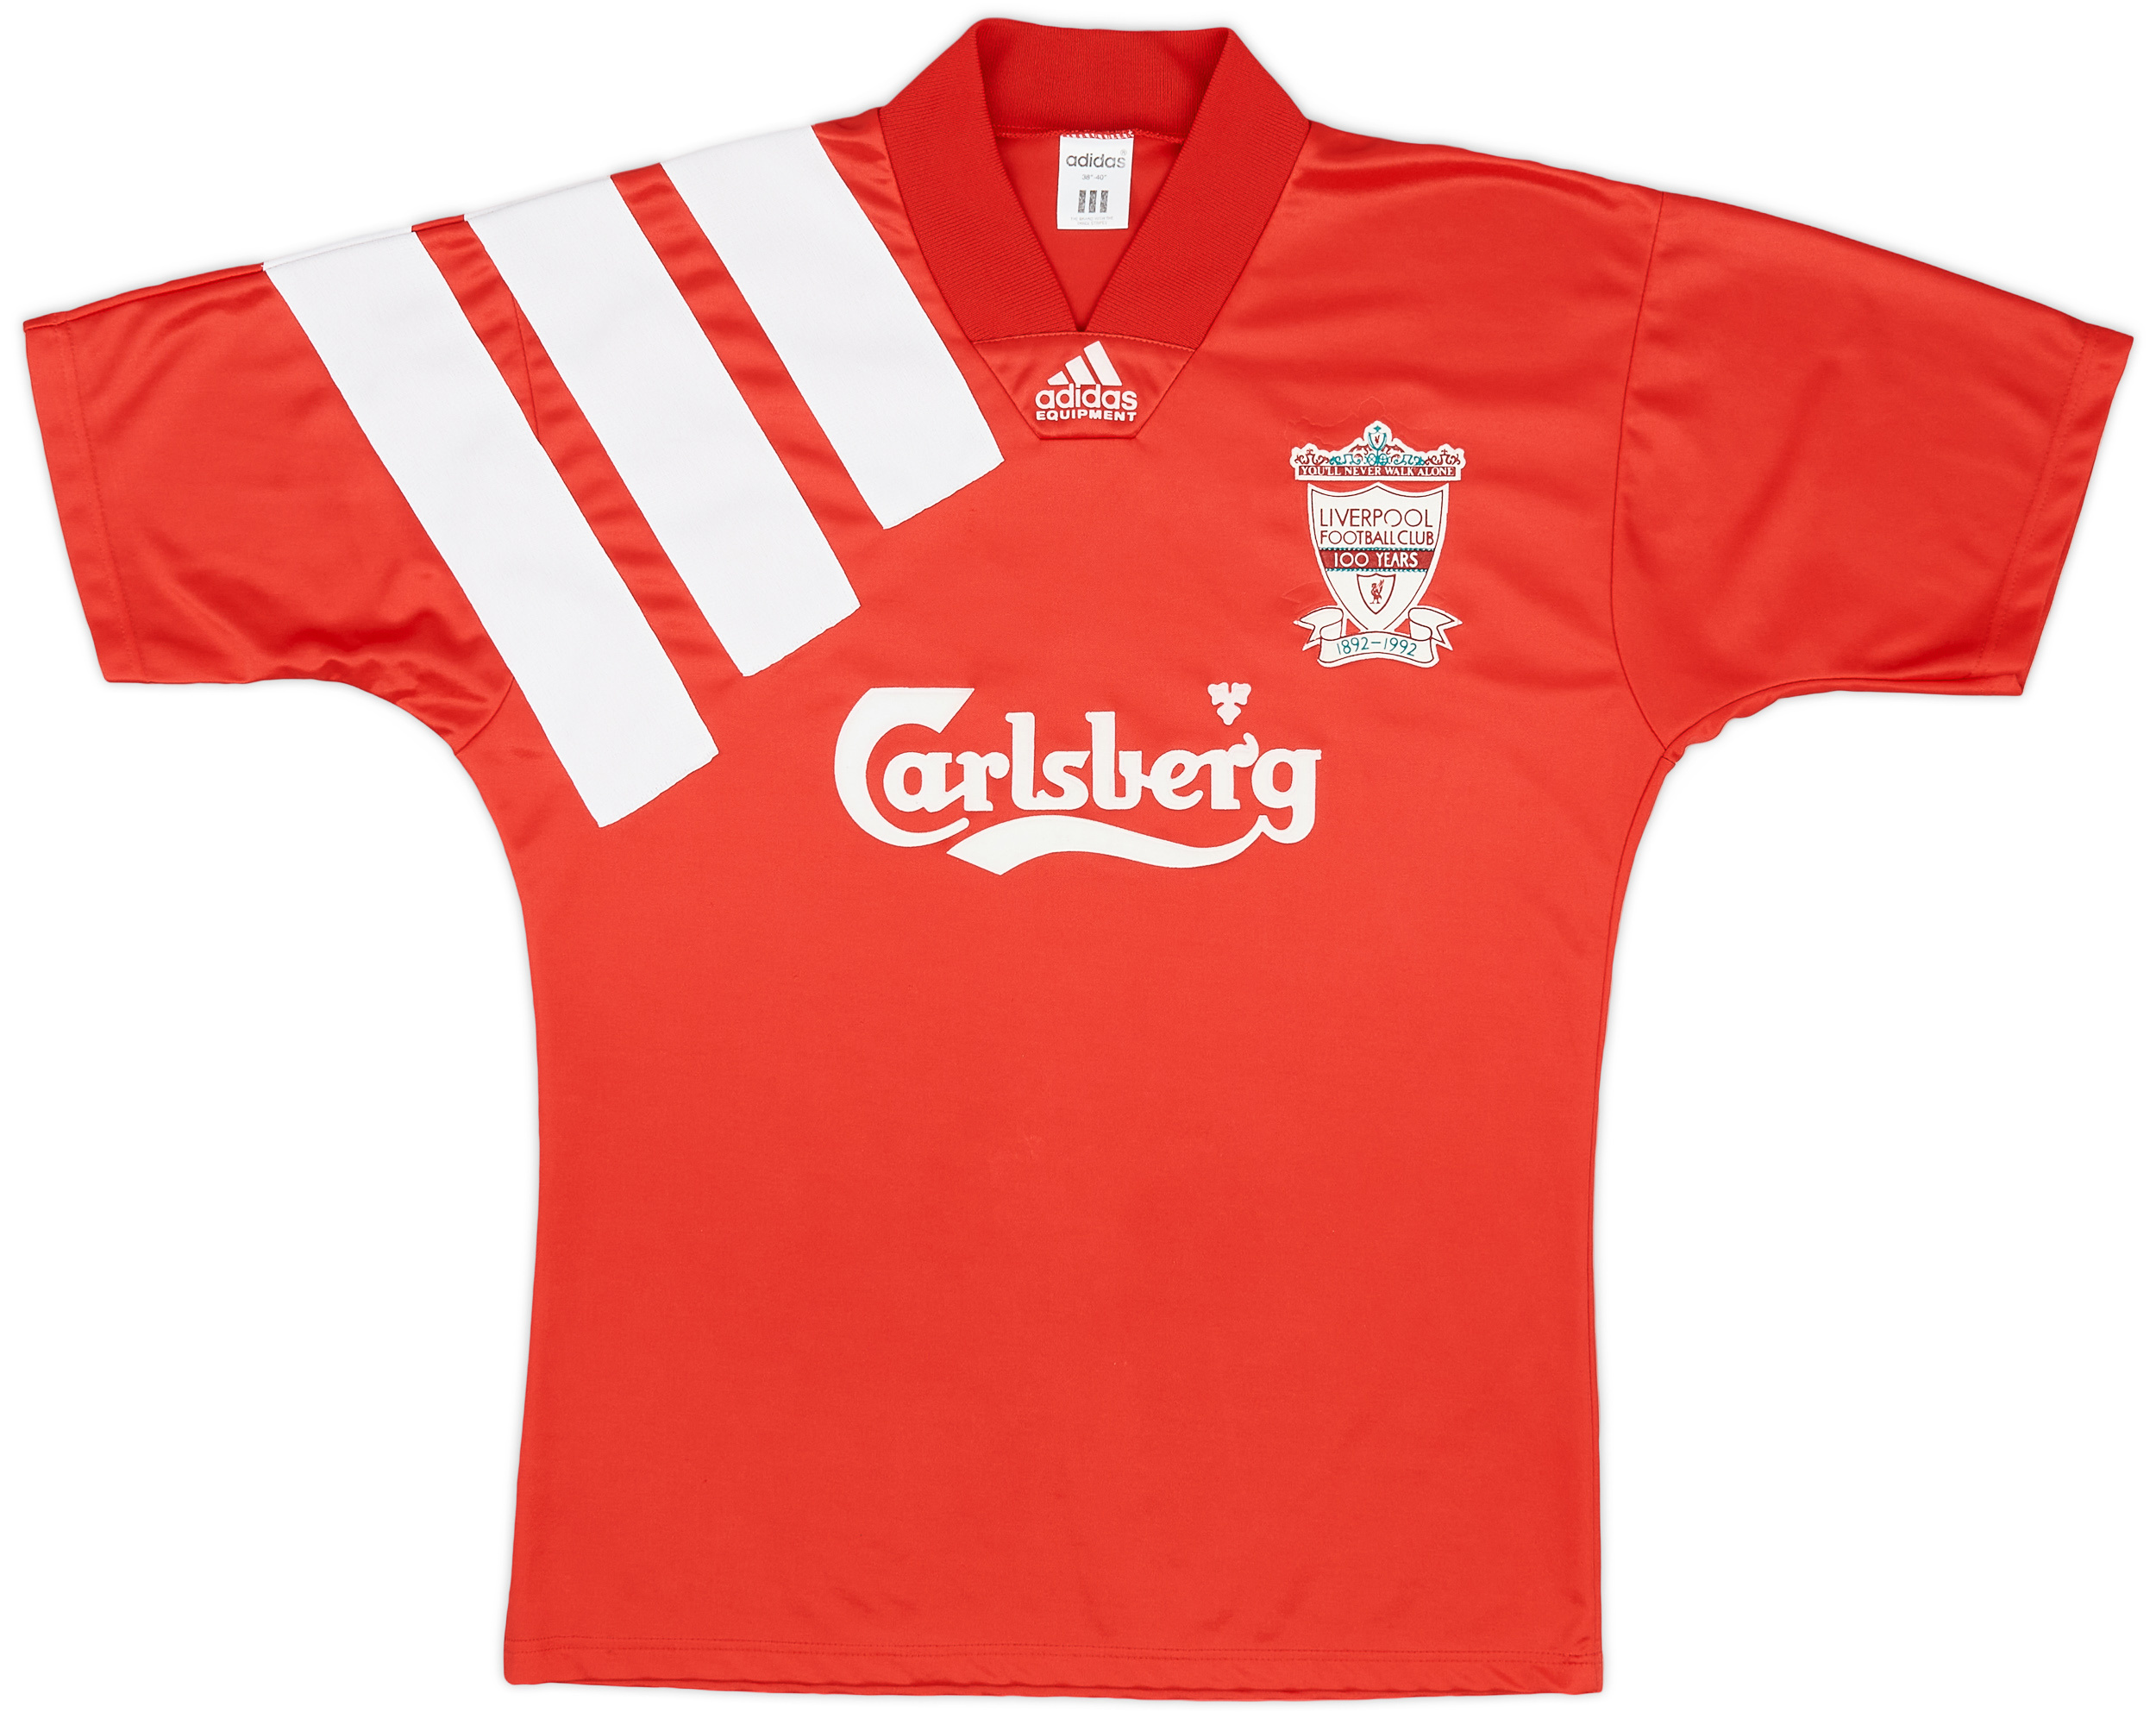 1992-93 Liverpool Centenary Home Shirt - 5/10 - ()